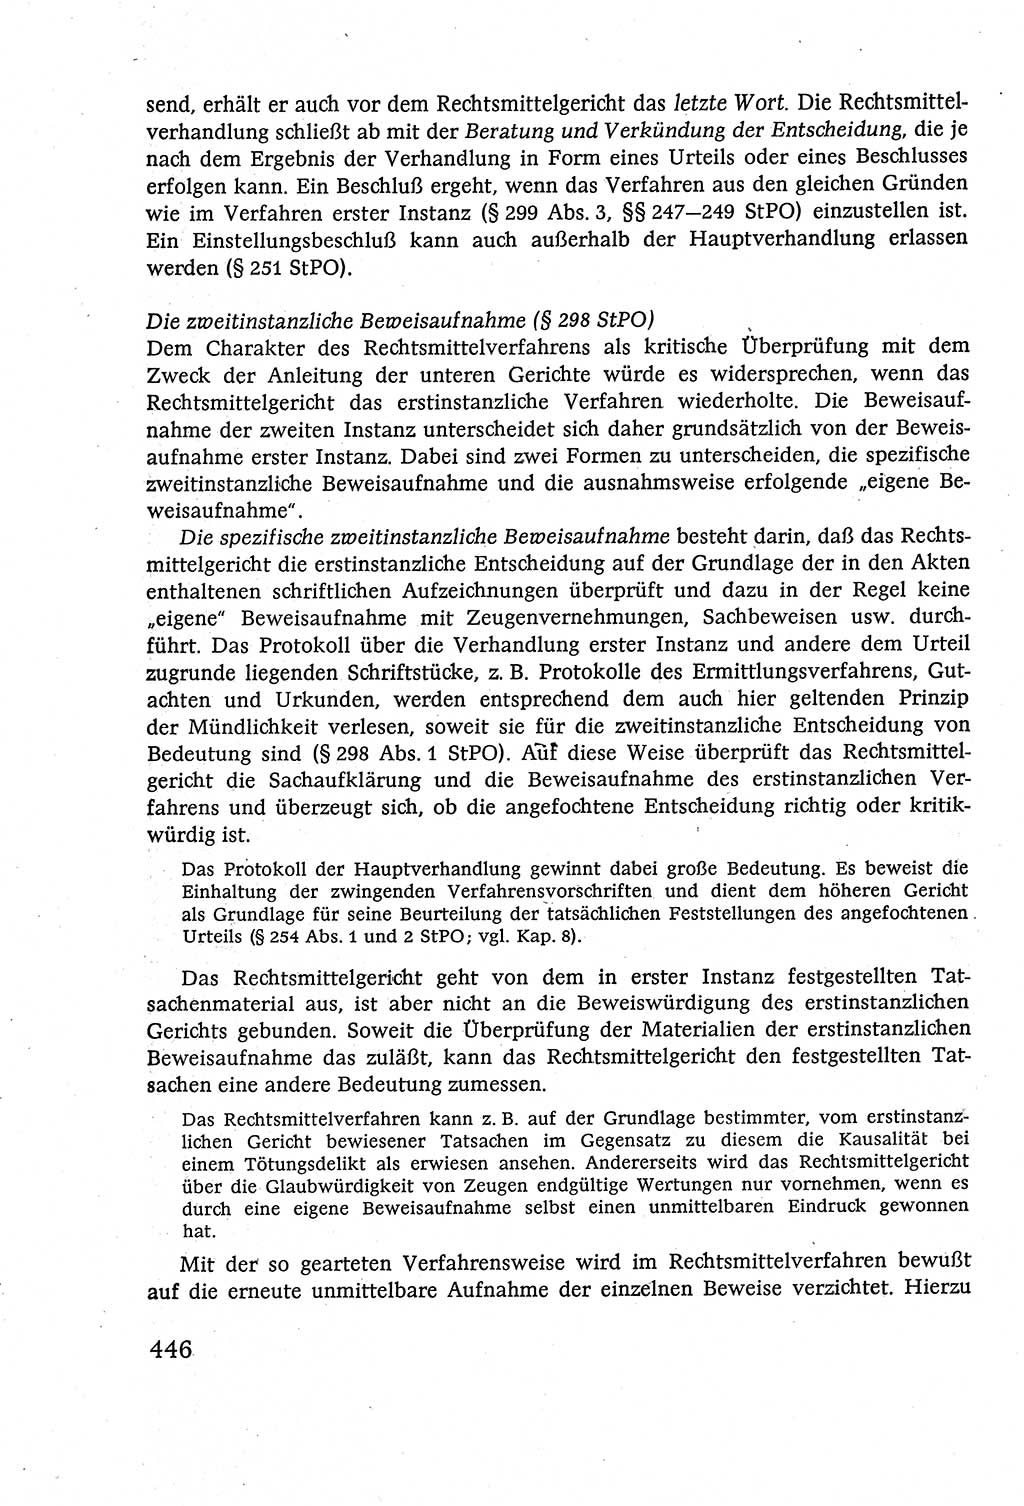 Strafverfahrensrecht [Deutsche Demokratische Republik (DDR)], Lehrbuch 1977, Seite 446 (Strafverf.-R. DDR Lb. 1977, S. 446)